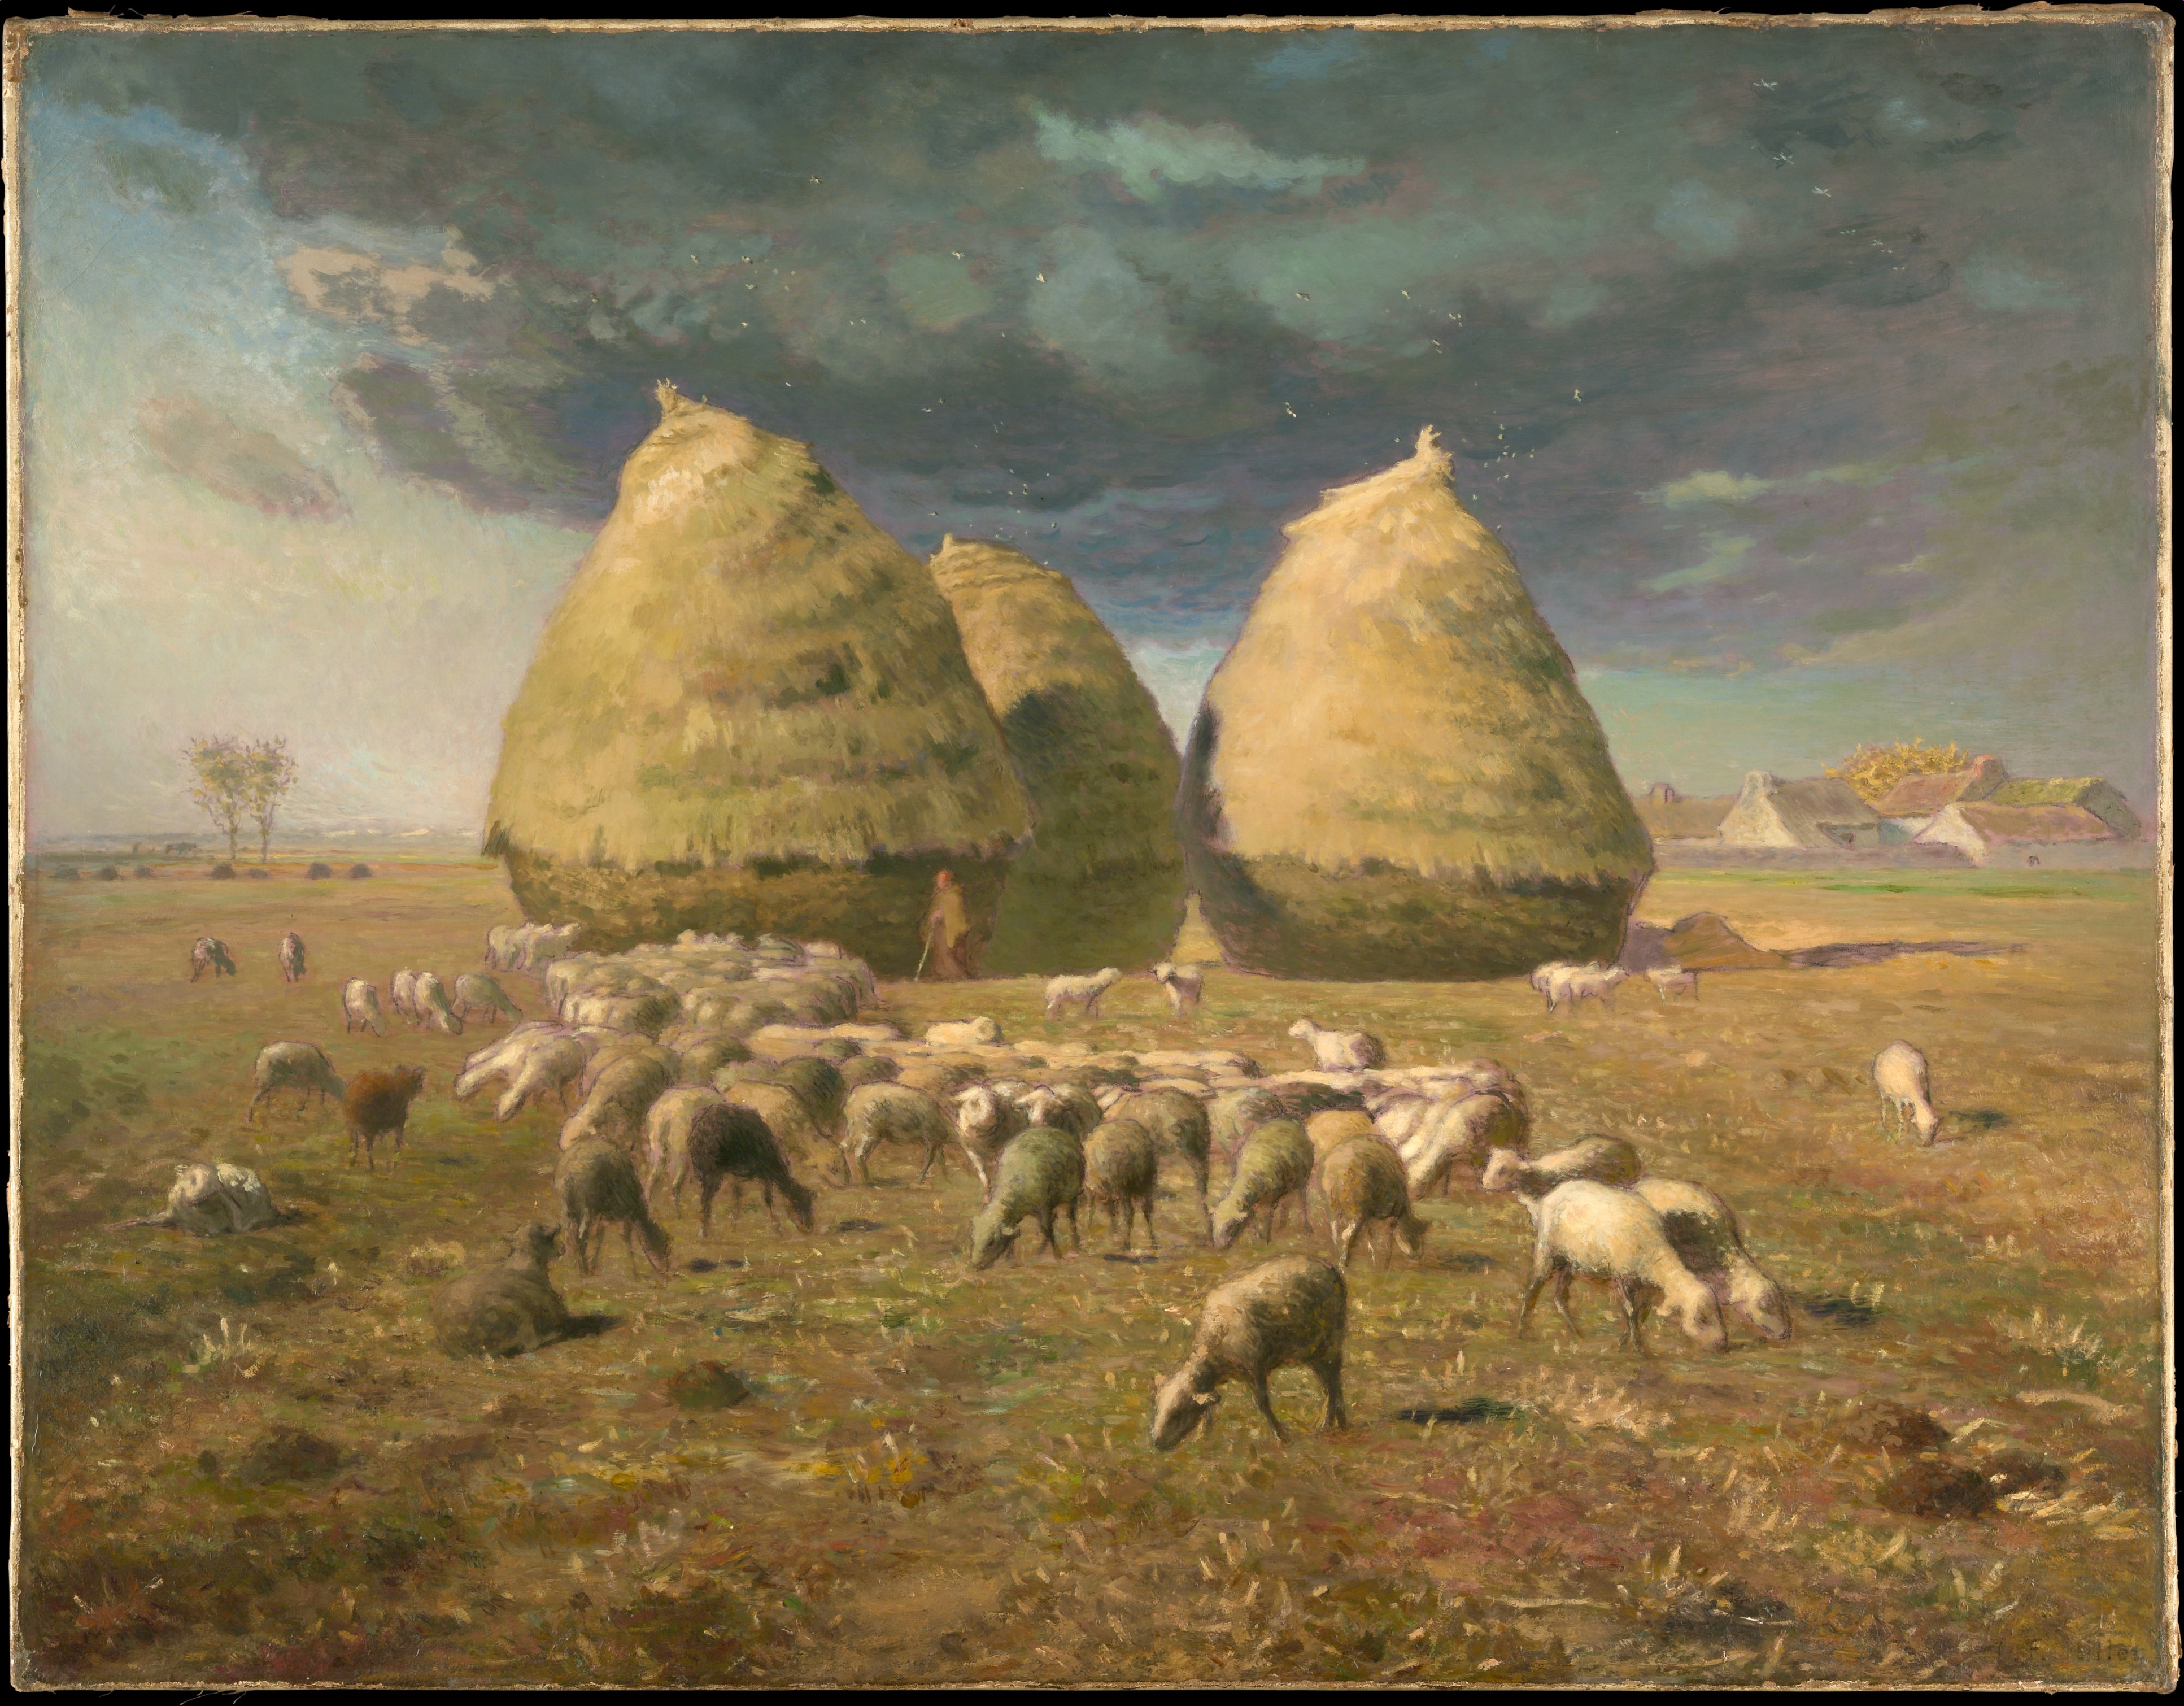 Des tas de foin : Automne by Jean-François Millet - ca. 1874 - 85,1 x 110,2 cm Metropolitan Museum of Art